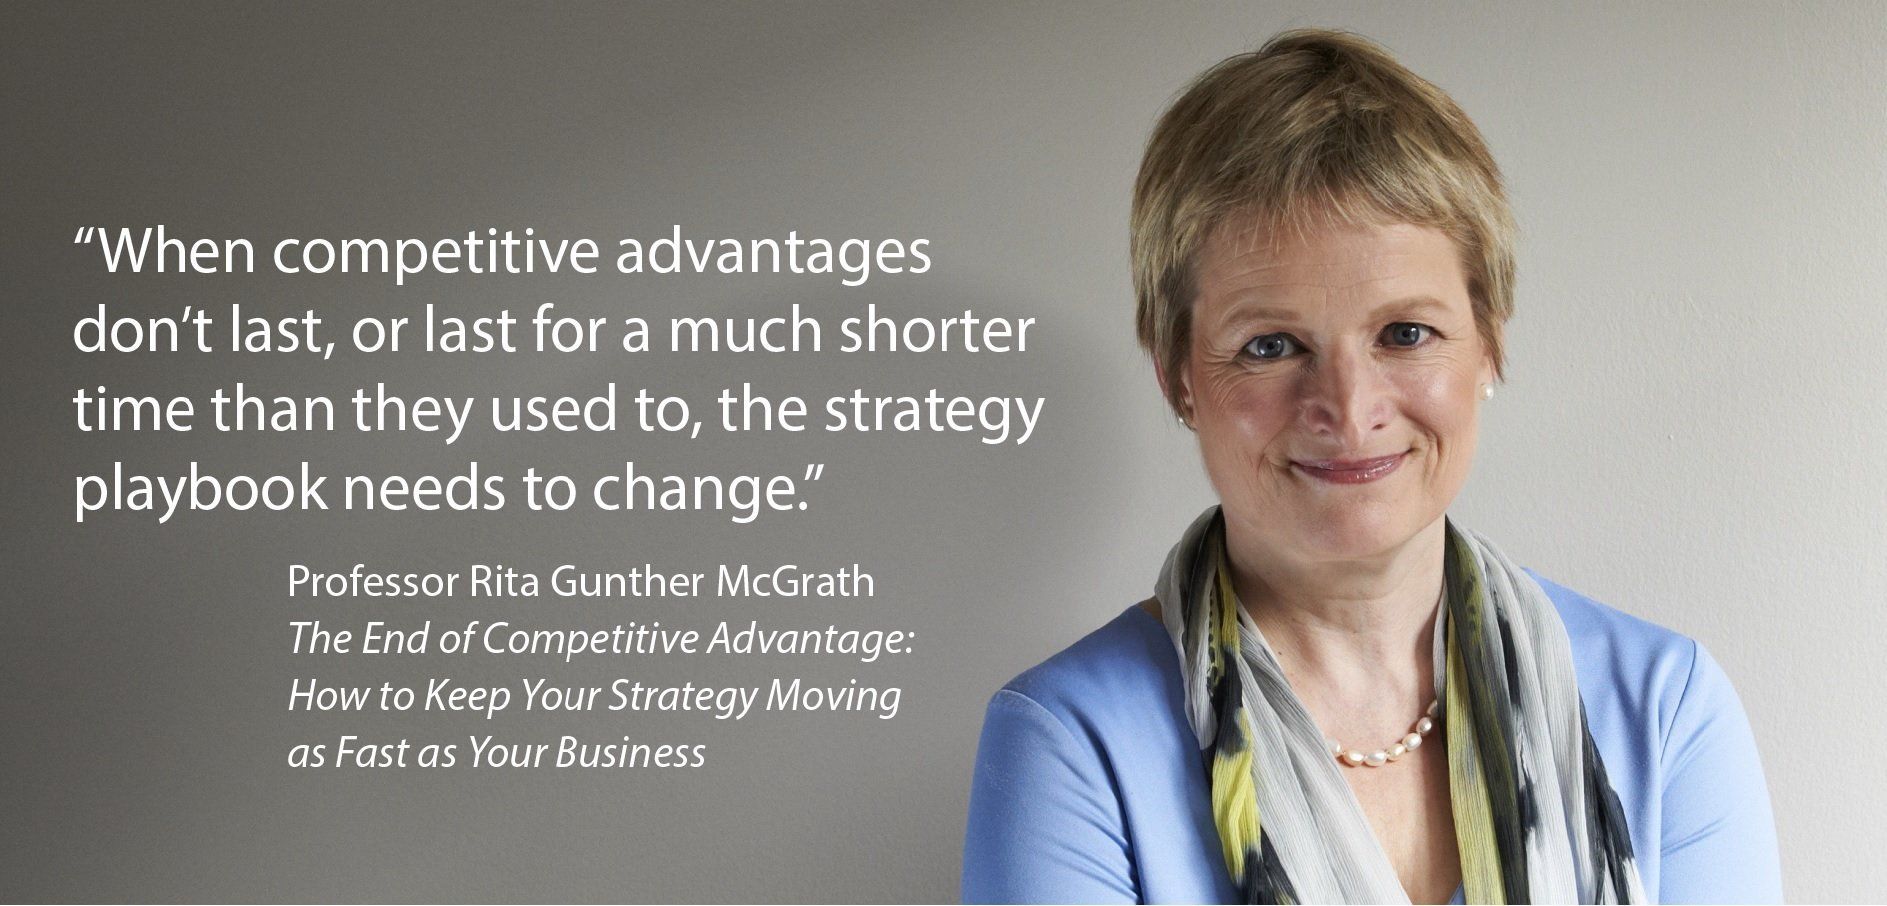 Professor Rita Gunther McGrath on competitive advantage